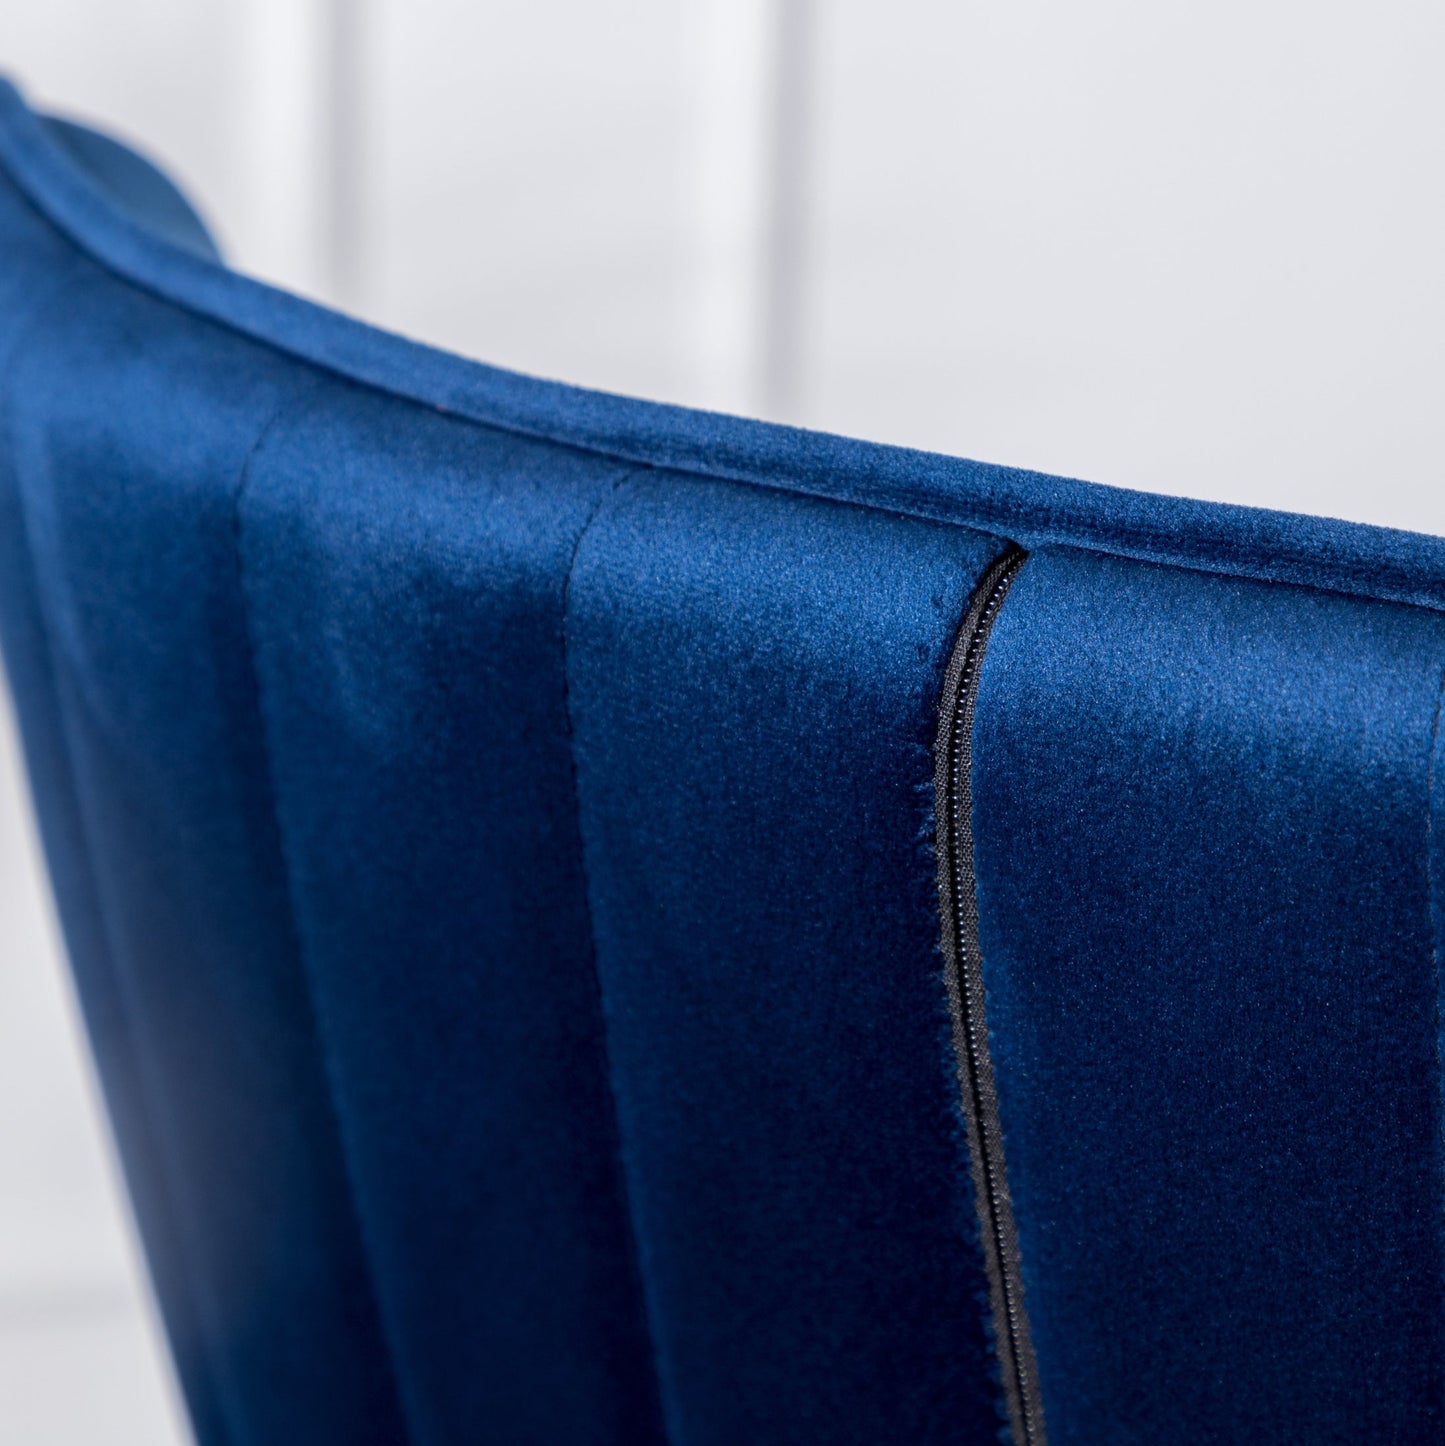 Leland Fabric Upholstered Wingback Bar Stools, Set of 2, Blue